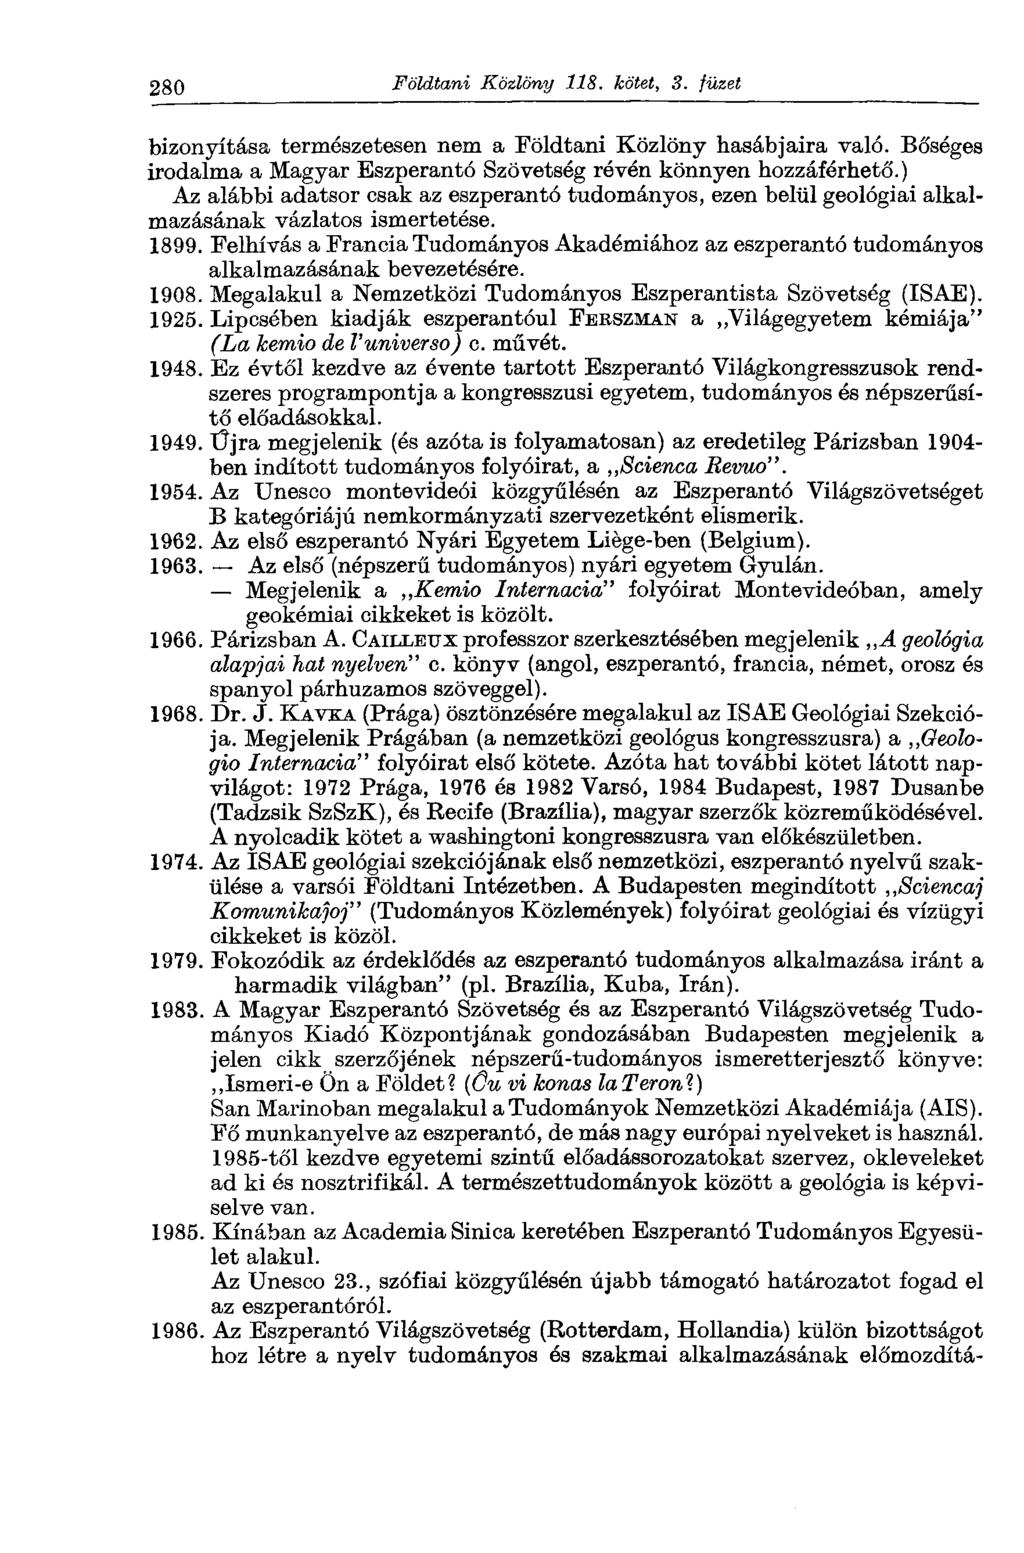 280 Földtani Közlöny 118. kötet, 3. füzet bizonyítása természetesen nem a Földtani Közlöny hasábjaira való. Bőséges irodalma a Magyar Eszperantó Szövetség révén könnyen hozzáférhető.